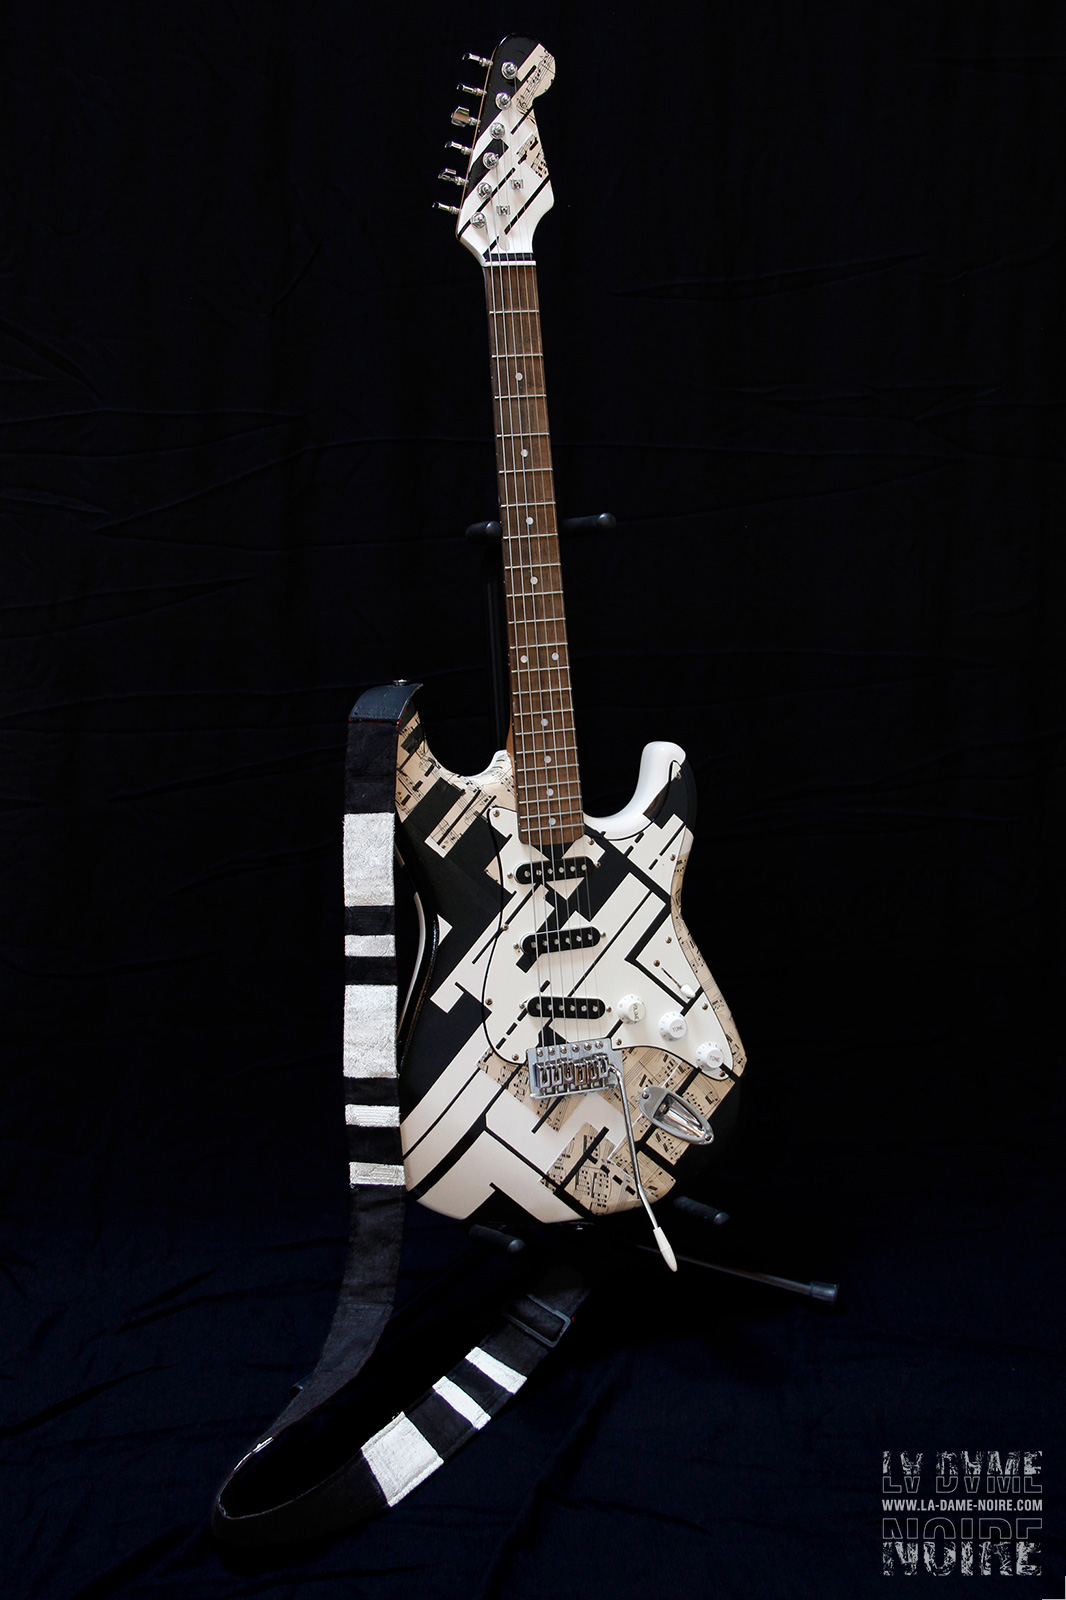 Vue globale de la Guitare peinte en noir et blanc